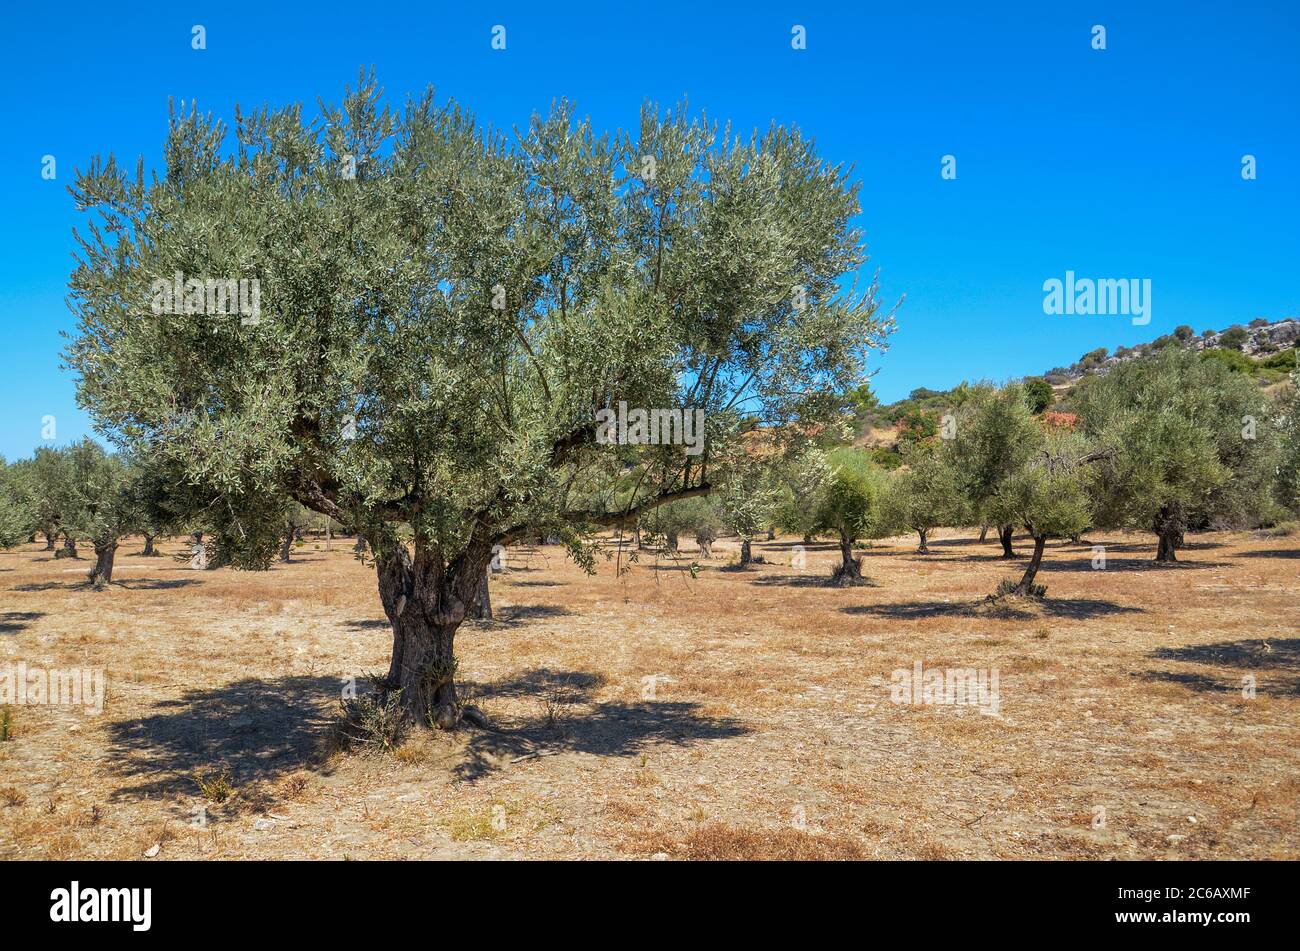 Plantación de olivos en verano caliente mediodía Foto de stock